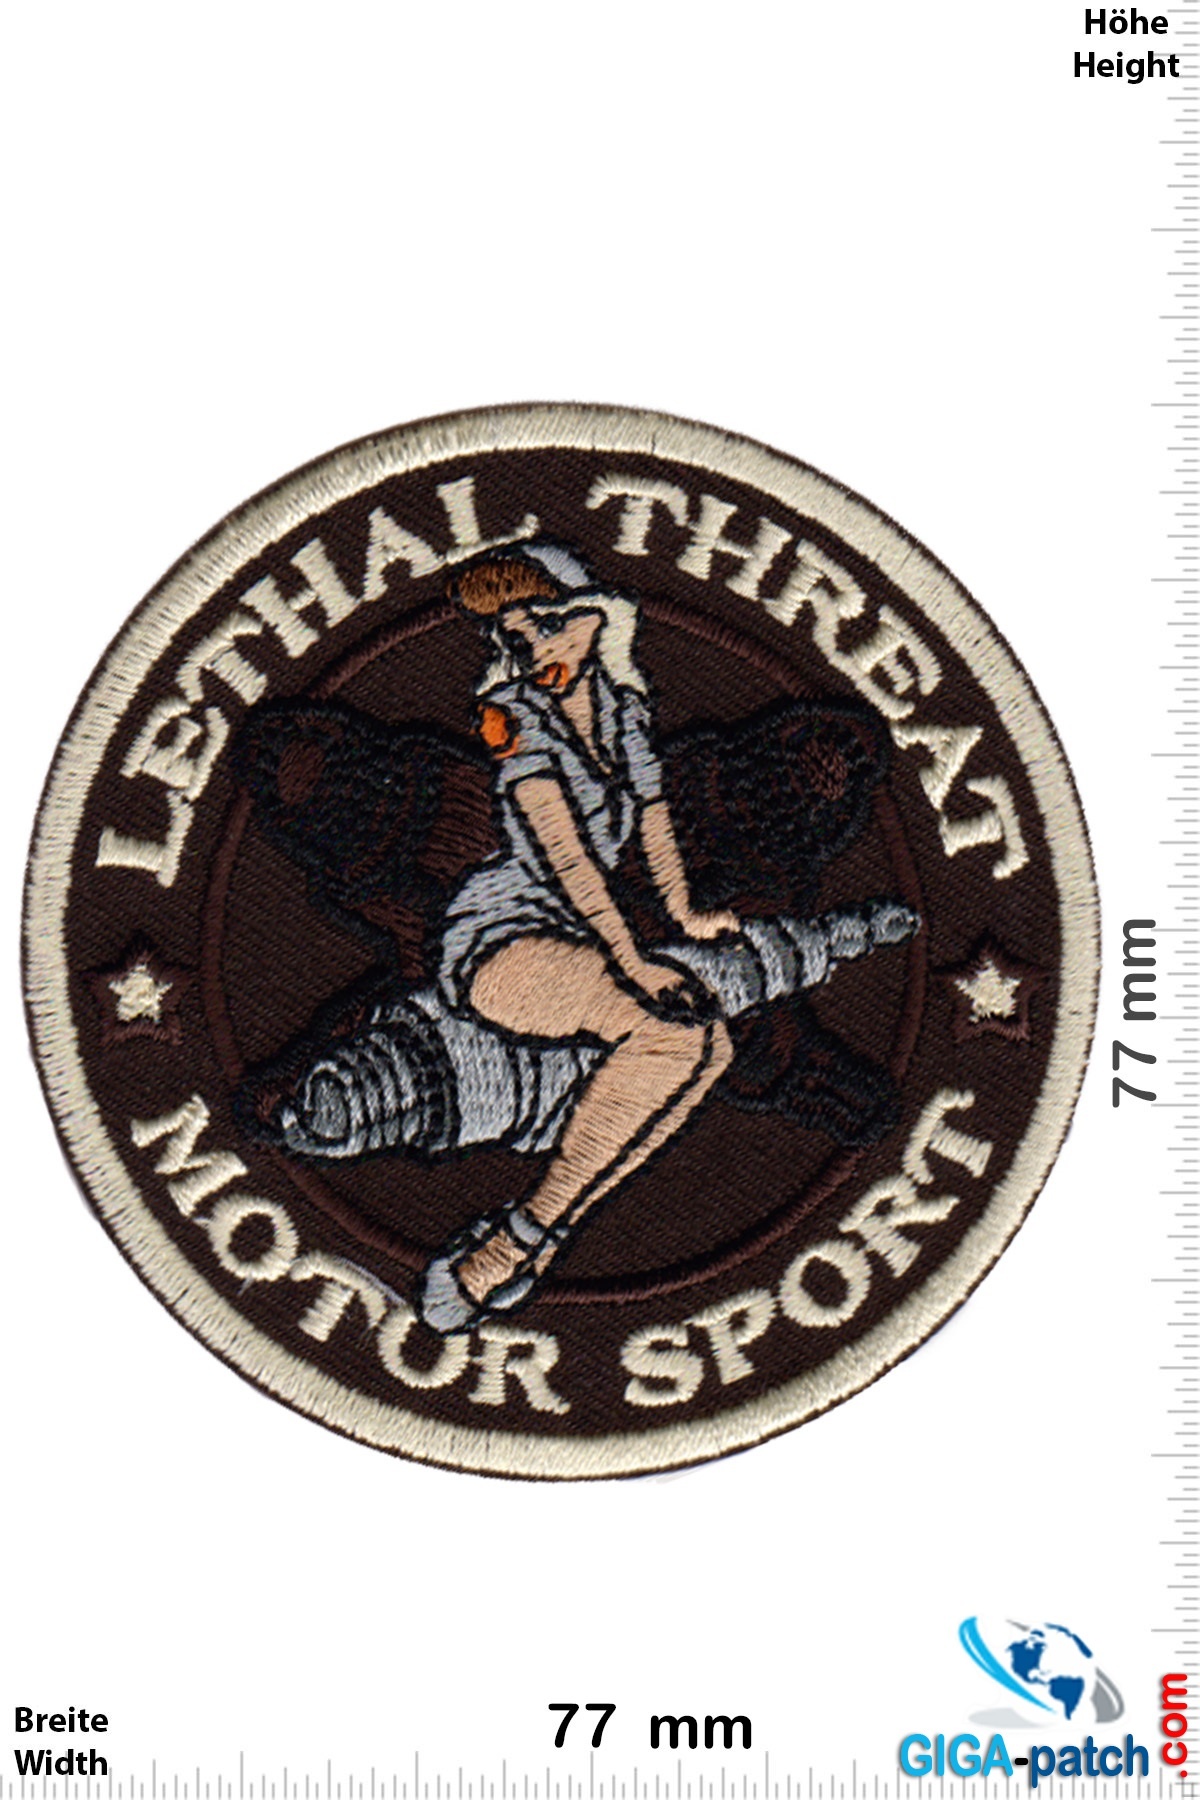 Hot Rod Lethal Threat - Motor Sport - Spark